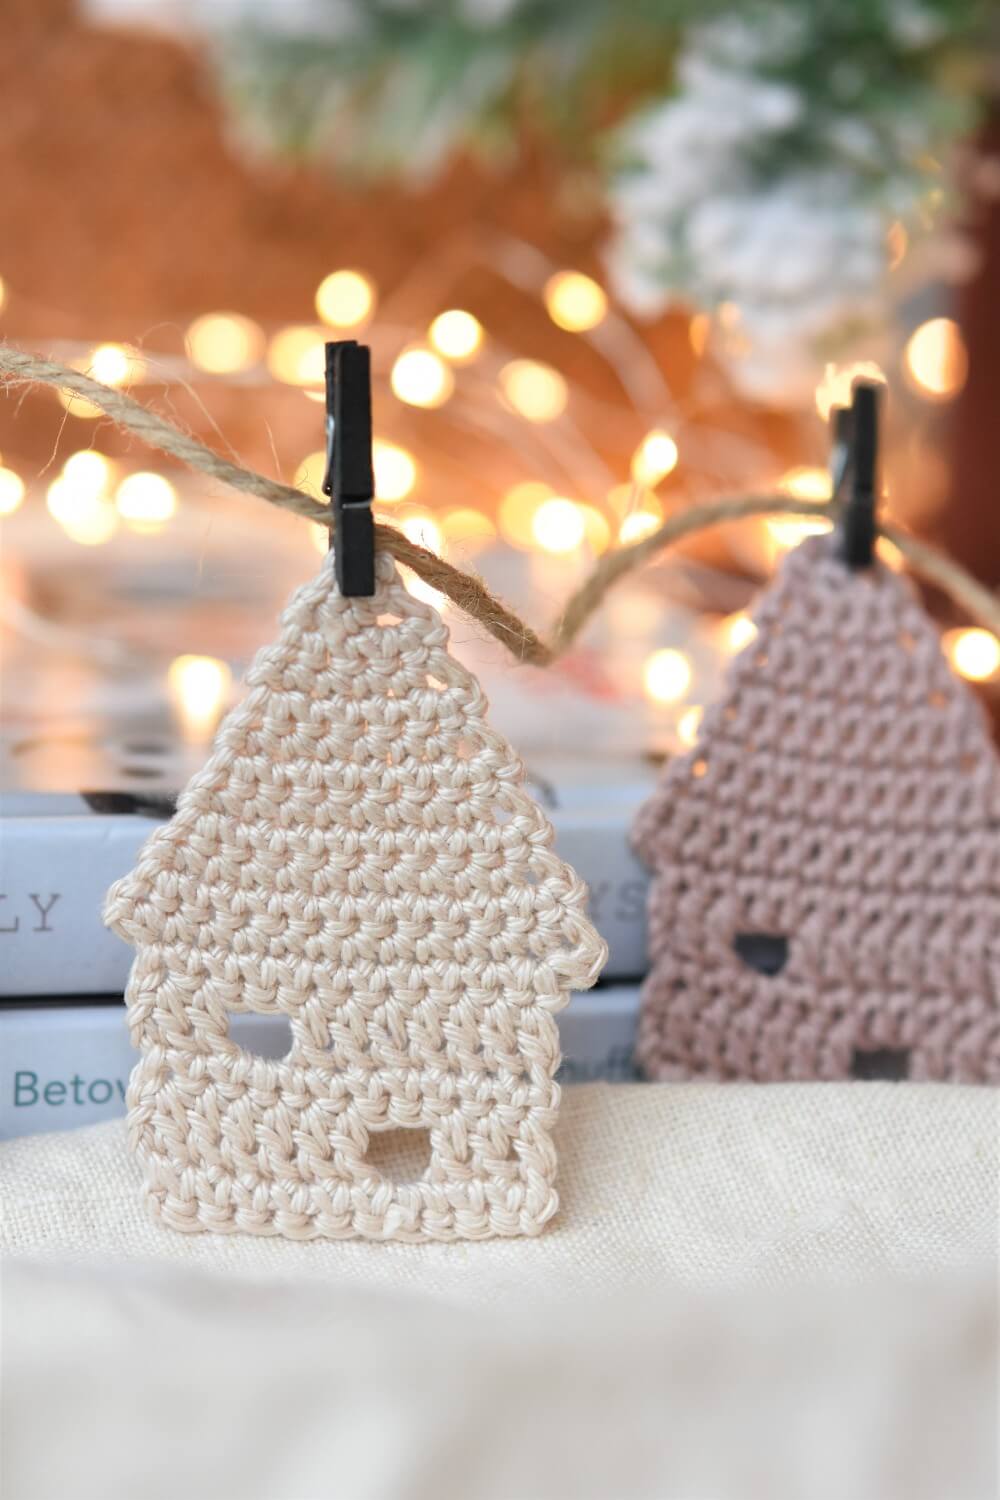 little crochet house motif